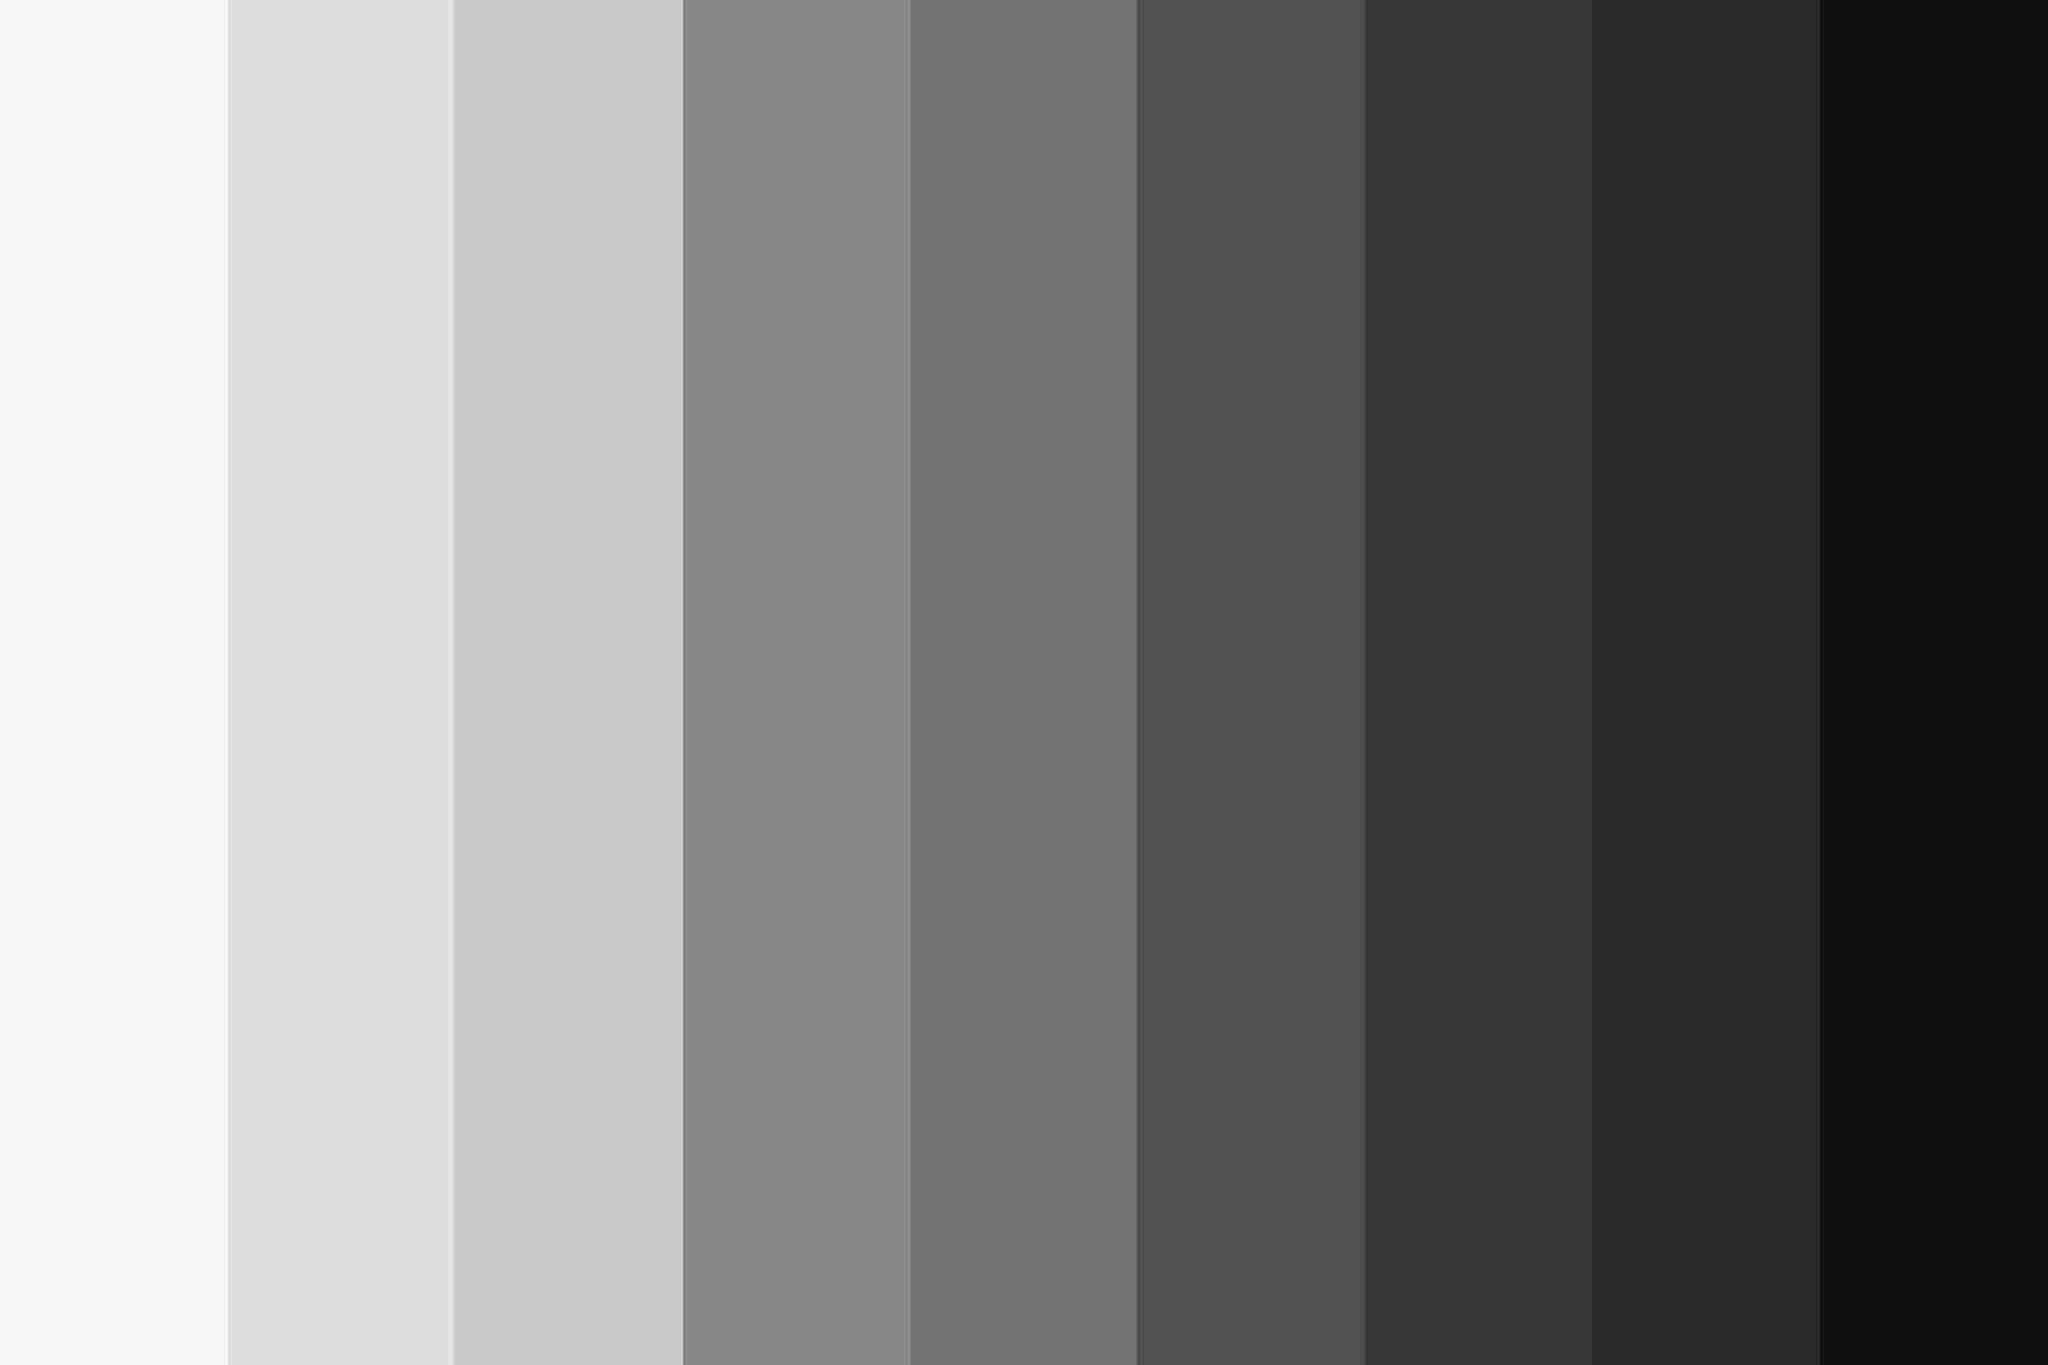 Gray Color Scheme for Tailwind CSS sẽ cho bạn một cái nhìn độc đáo về cách sử dụng các bảng màu xám để thiết kế trang web của mình. Hình ảnh liên quan sẽ minh họa các bảng màu và cách sử dụng chúng. Hãy khám phá và thêm một chút sắc thái cho trang web của bạn ngay hôm nay!